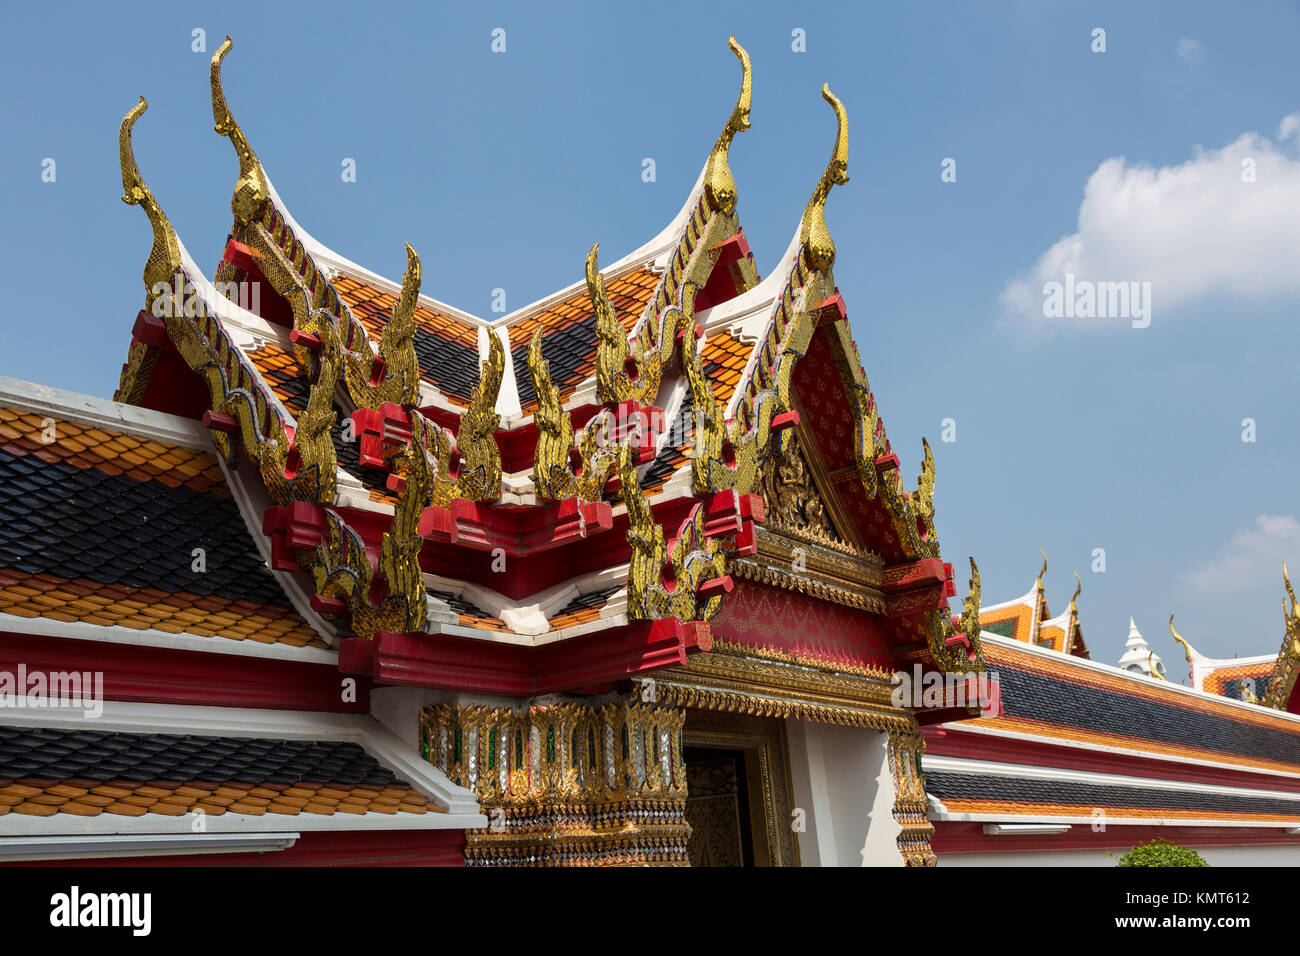 Bangkok, Thailand. Thailändische Architektur, zeigt die chofa, der Curling wies Erweiterungen an jedem Ende, dass die garuda, das Fahrzeug von Vishnu darstellen. Stockfoto